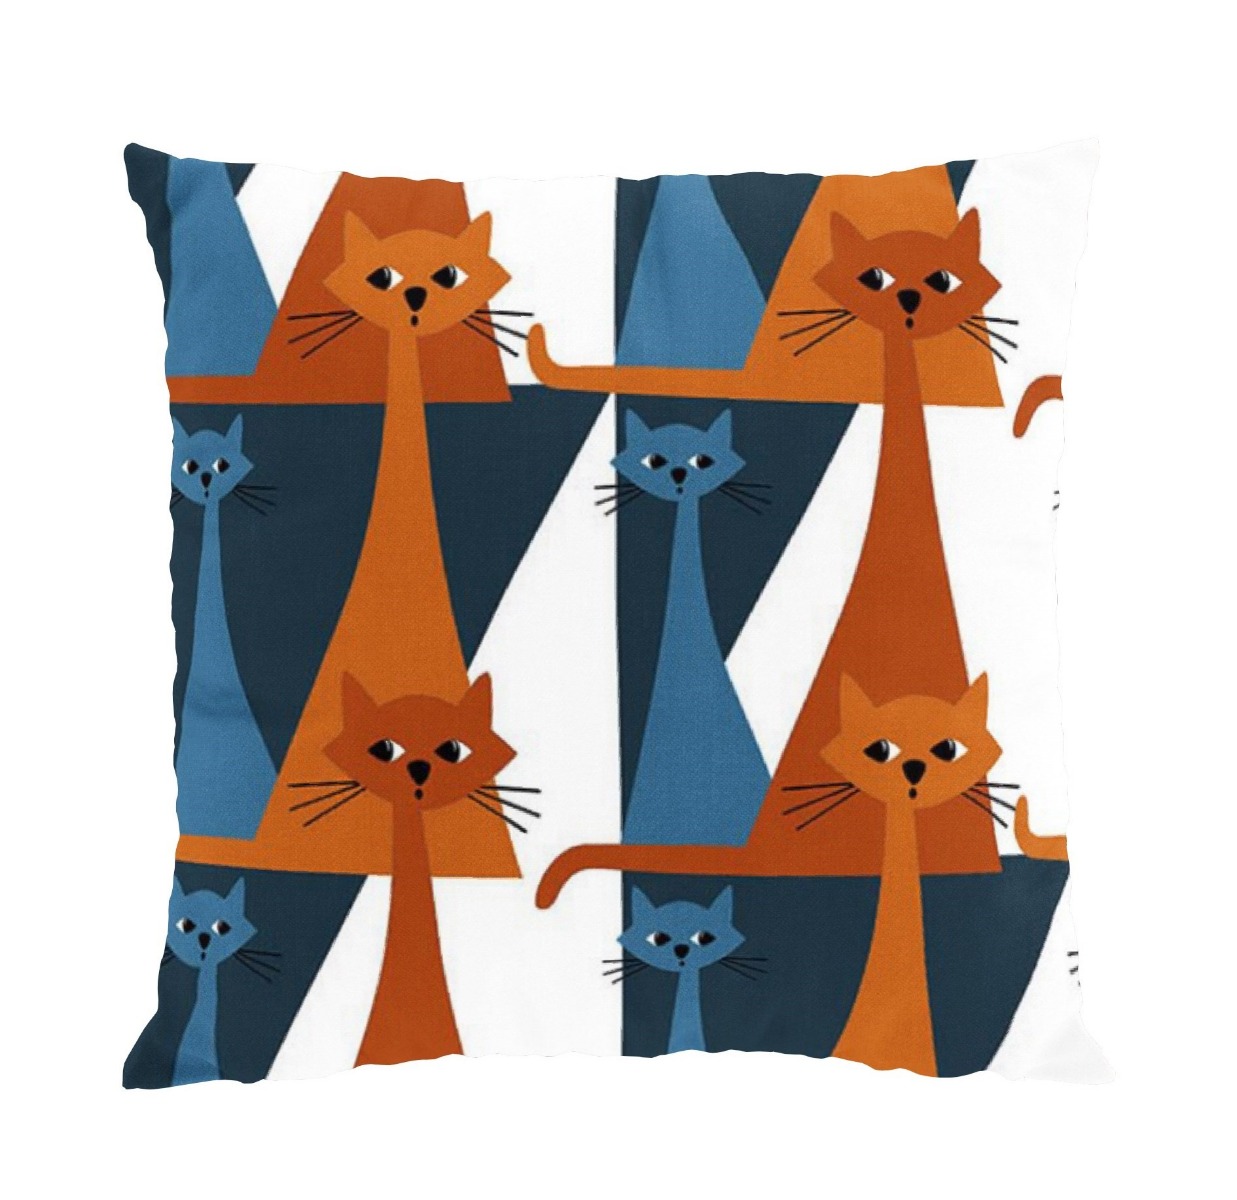 Arvidssons Textil Kitty Kuddfodral Orange/Blå